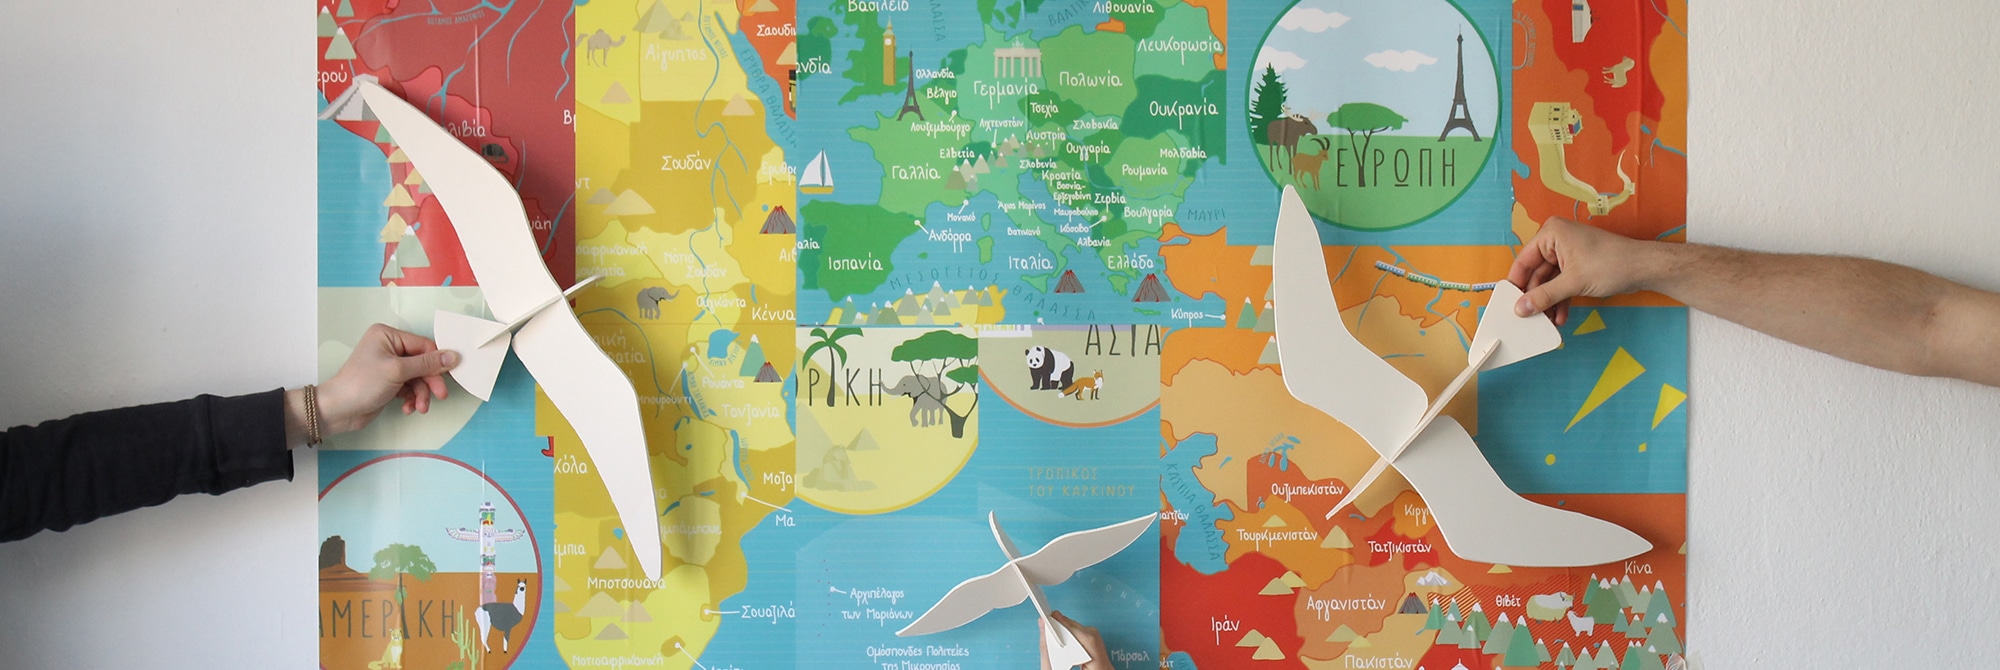 Hände halten Holzflieger vor bunte Weltkarten-Collage